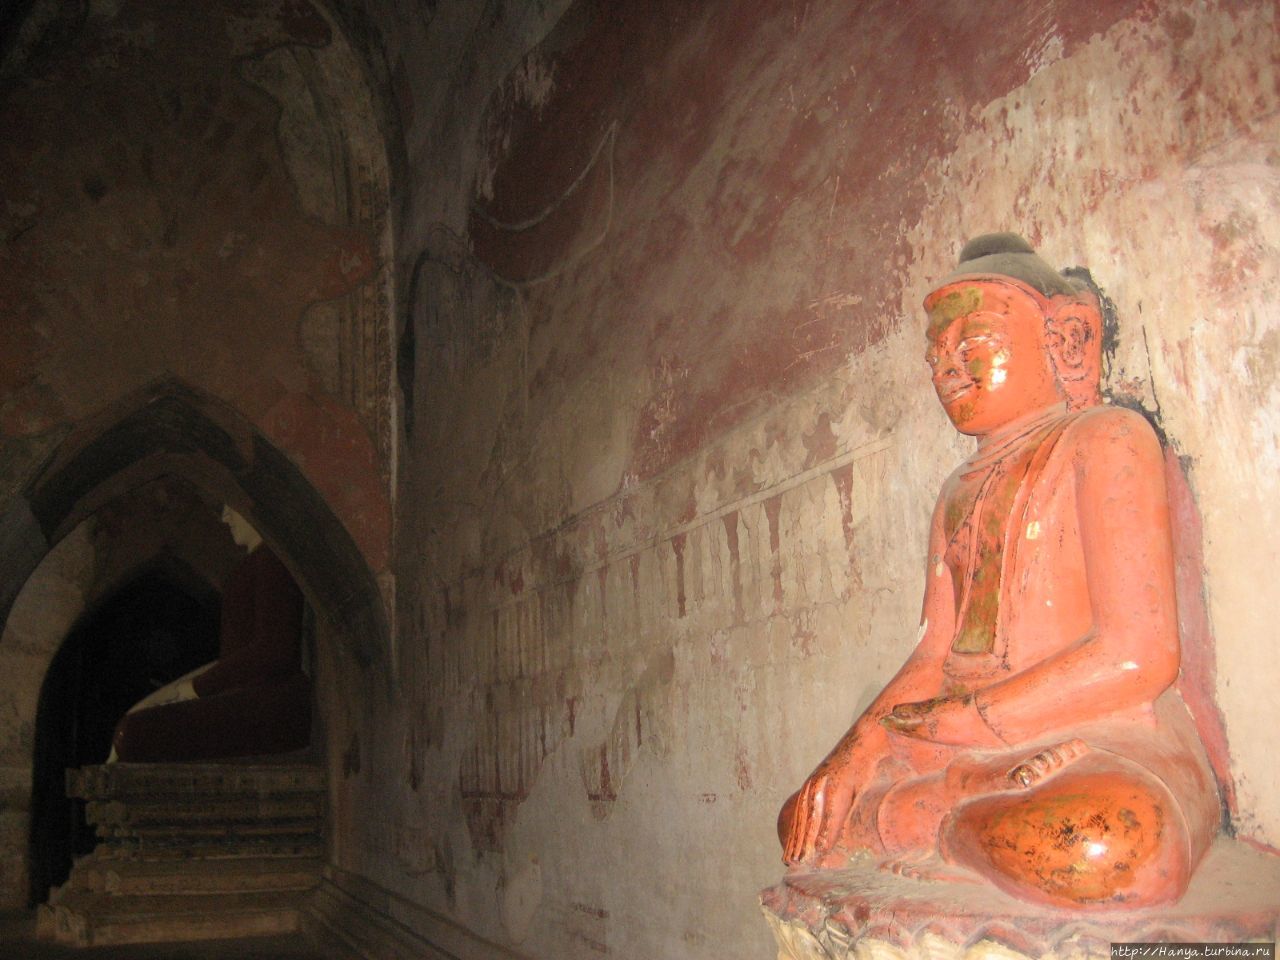 Храм Суламани Баган, Мьянма